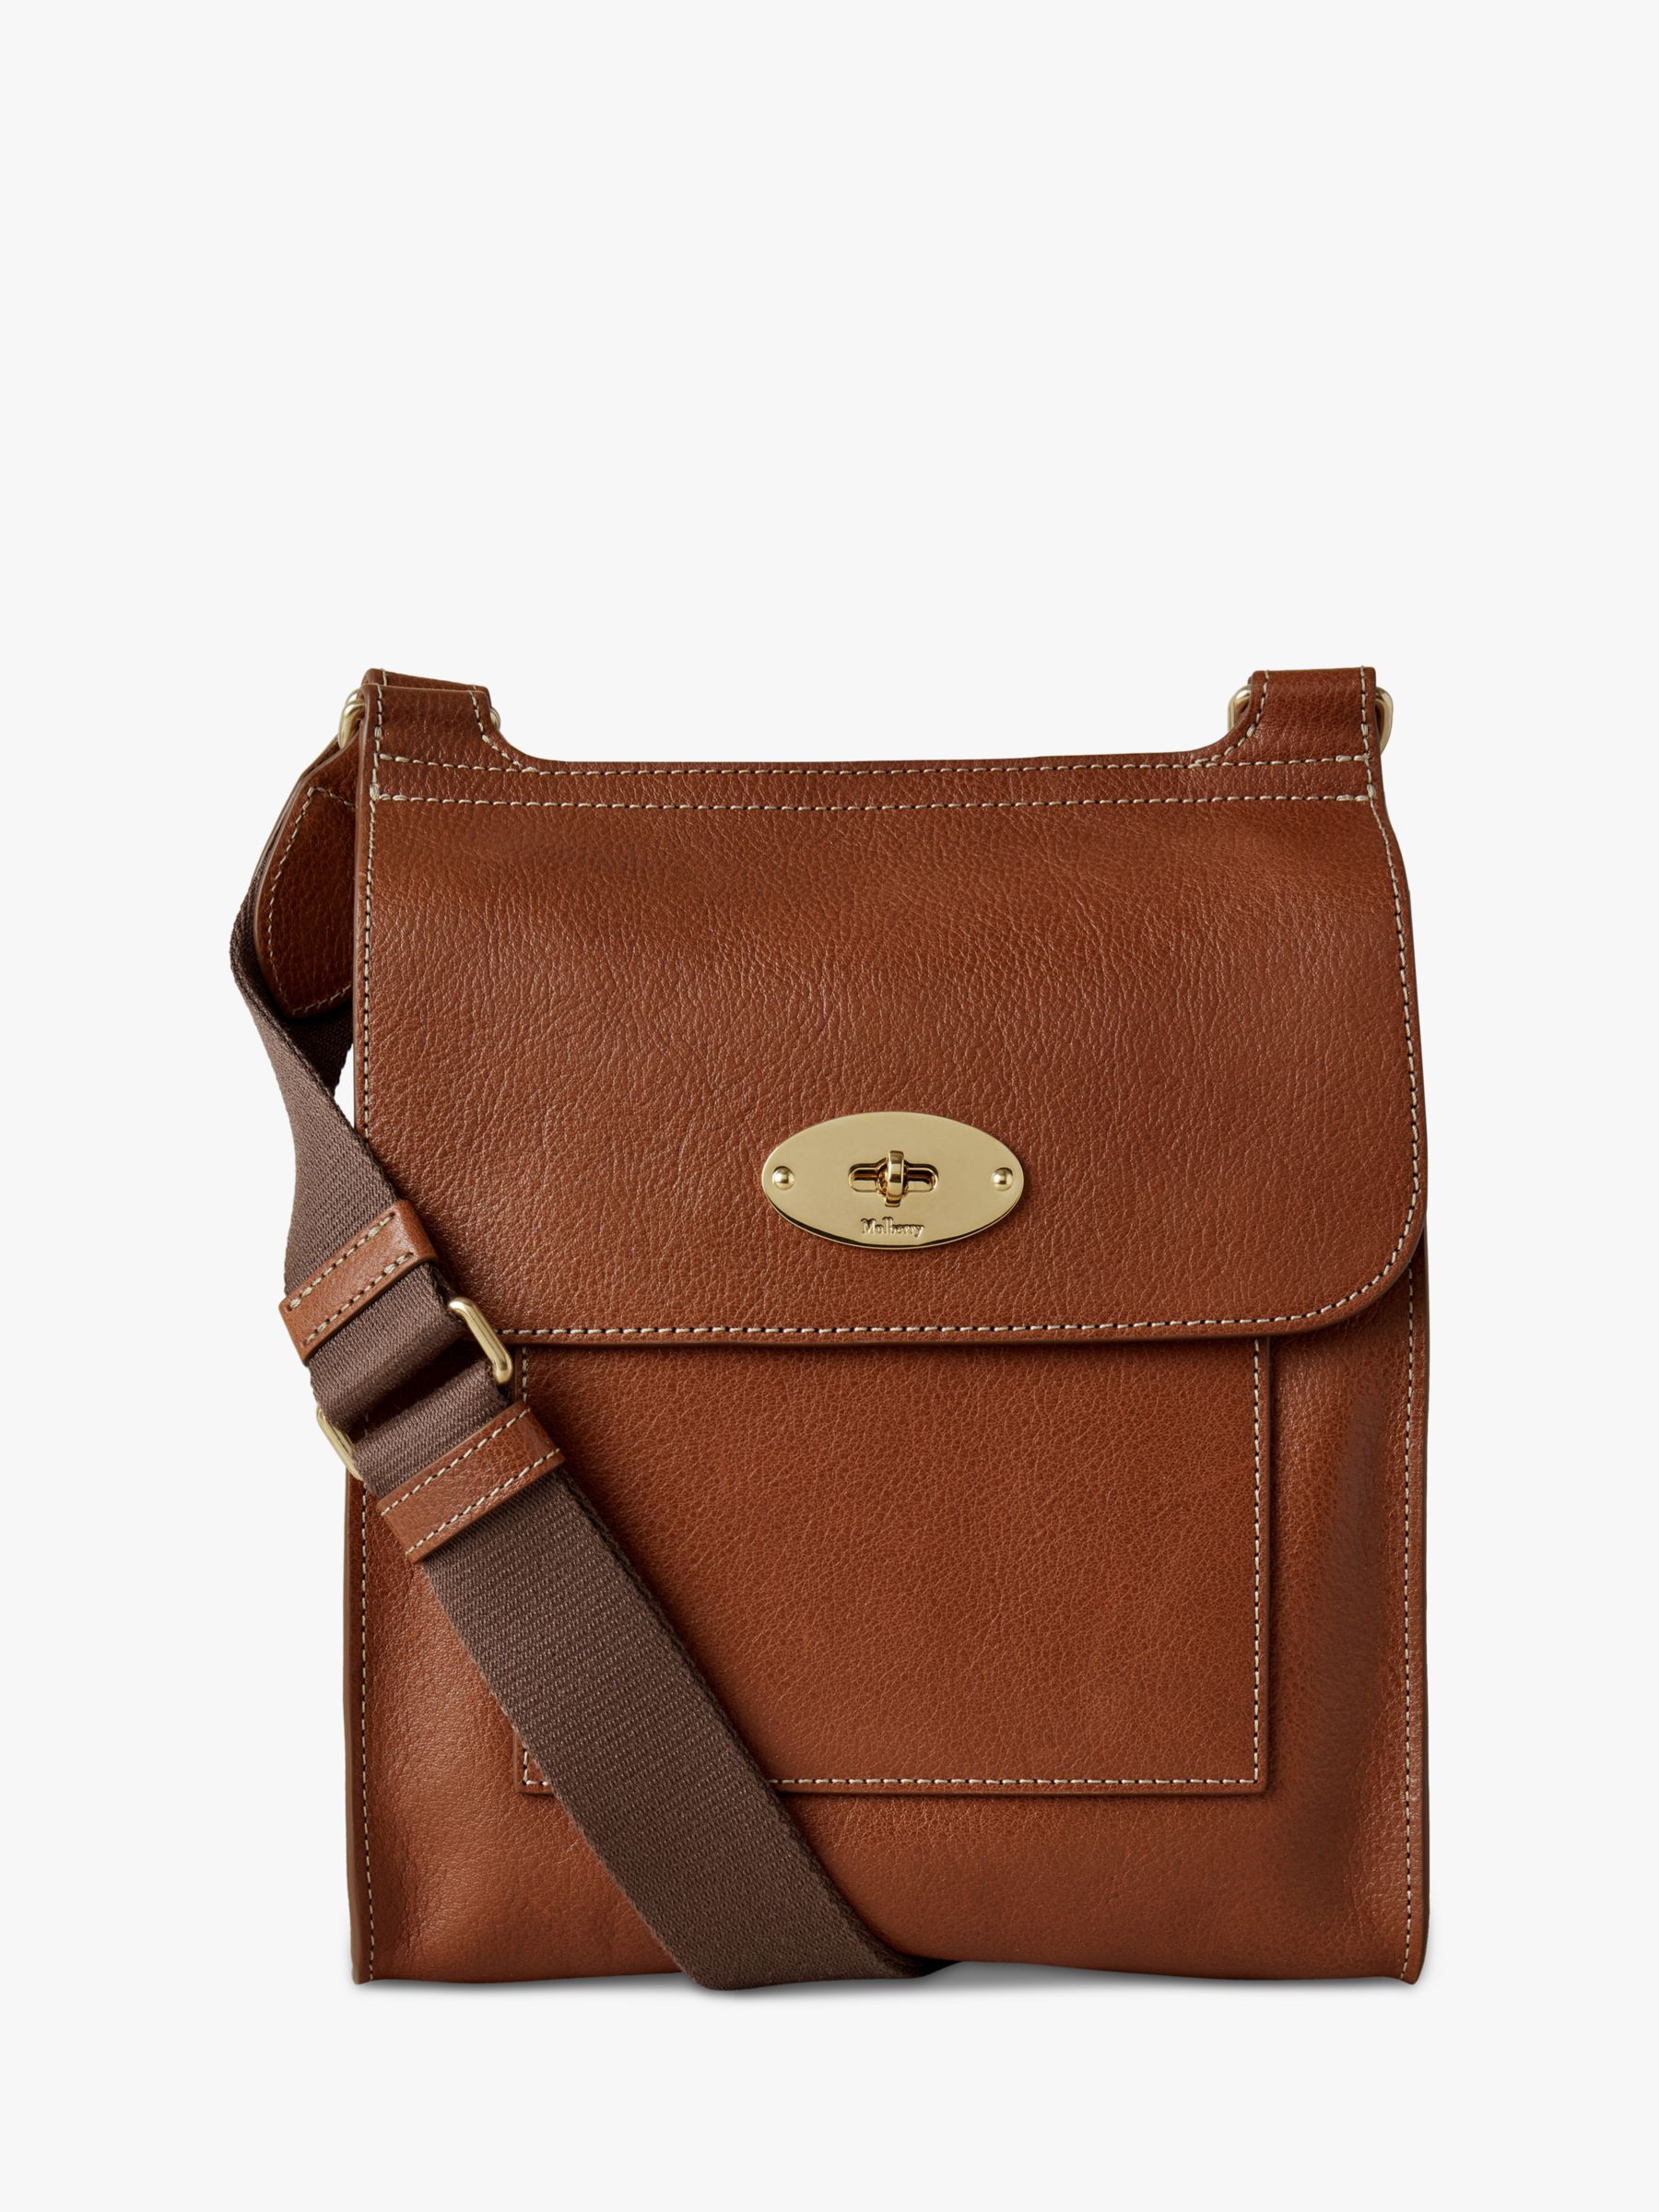 Shoulder-bag (Antony Messenger bag) from Mulberry